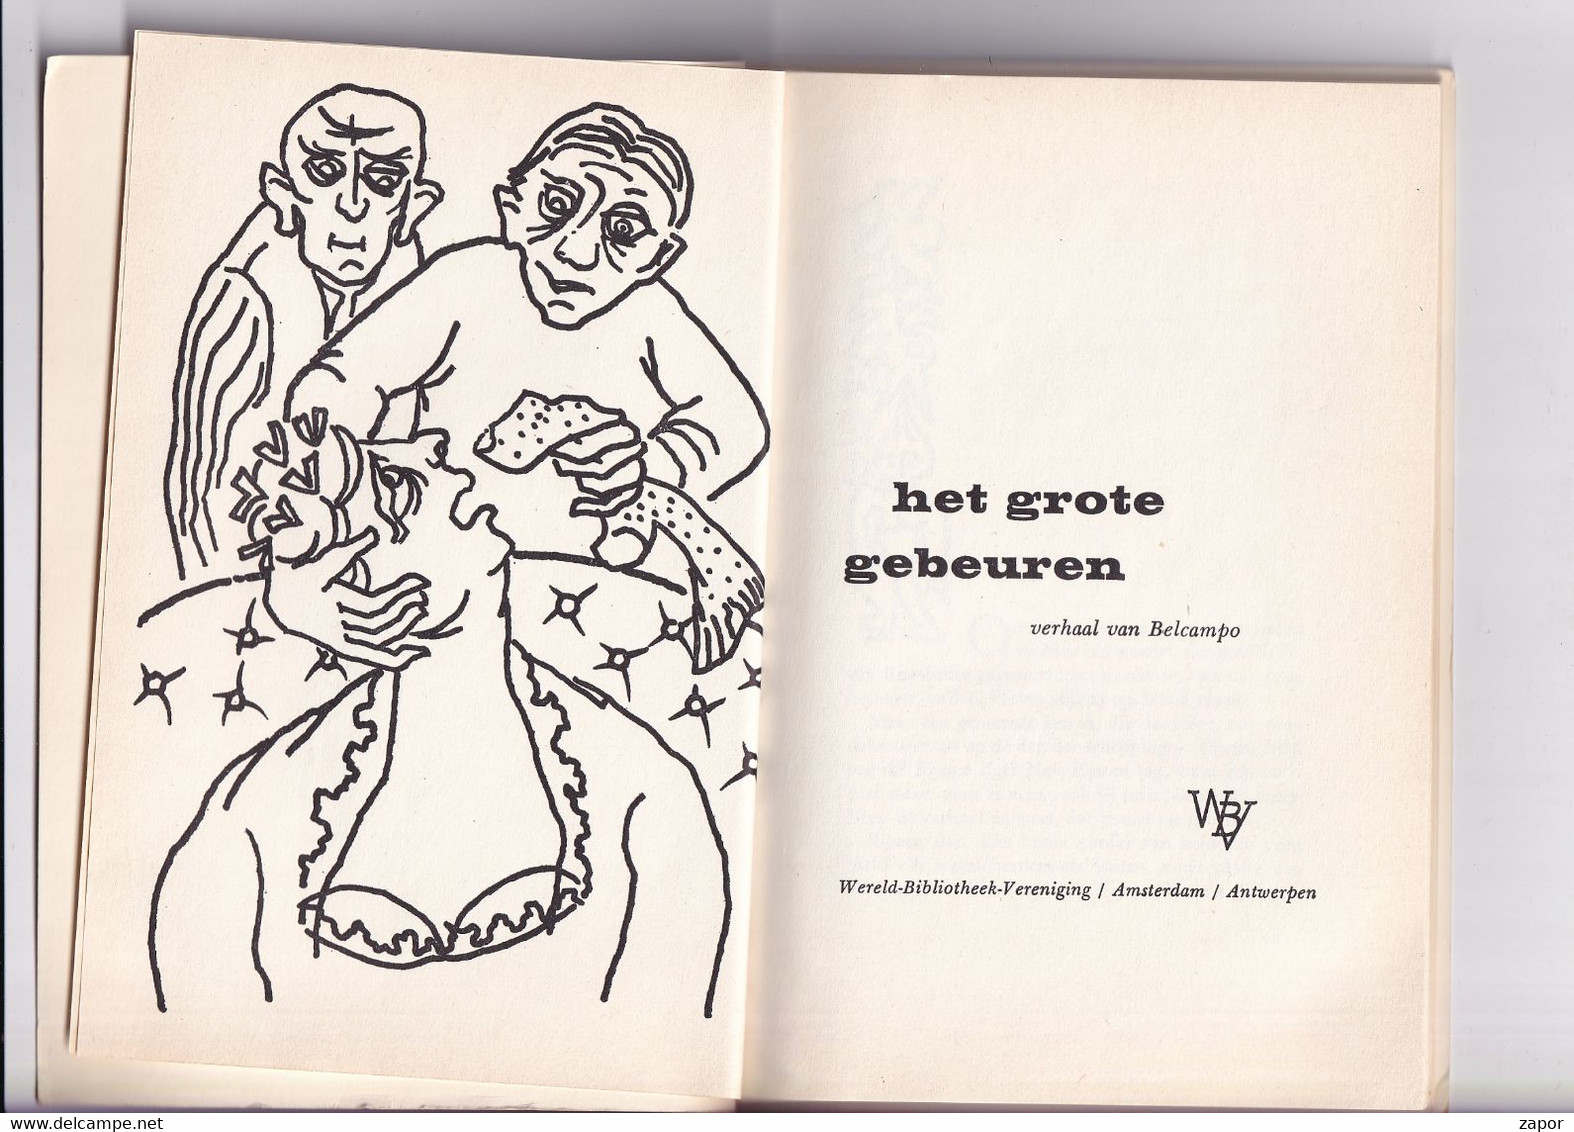 Belcampo - Het Grote Gebeuren - 1959 - Literature